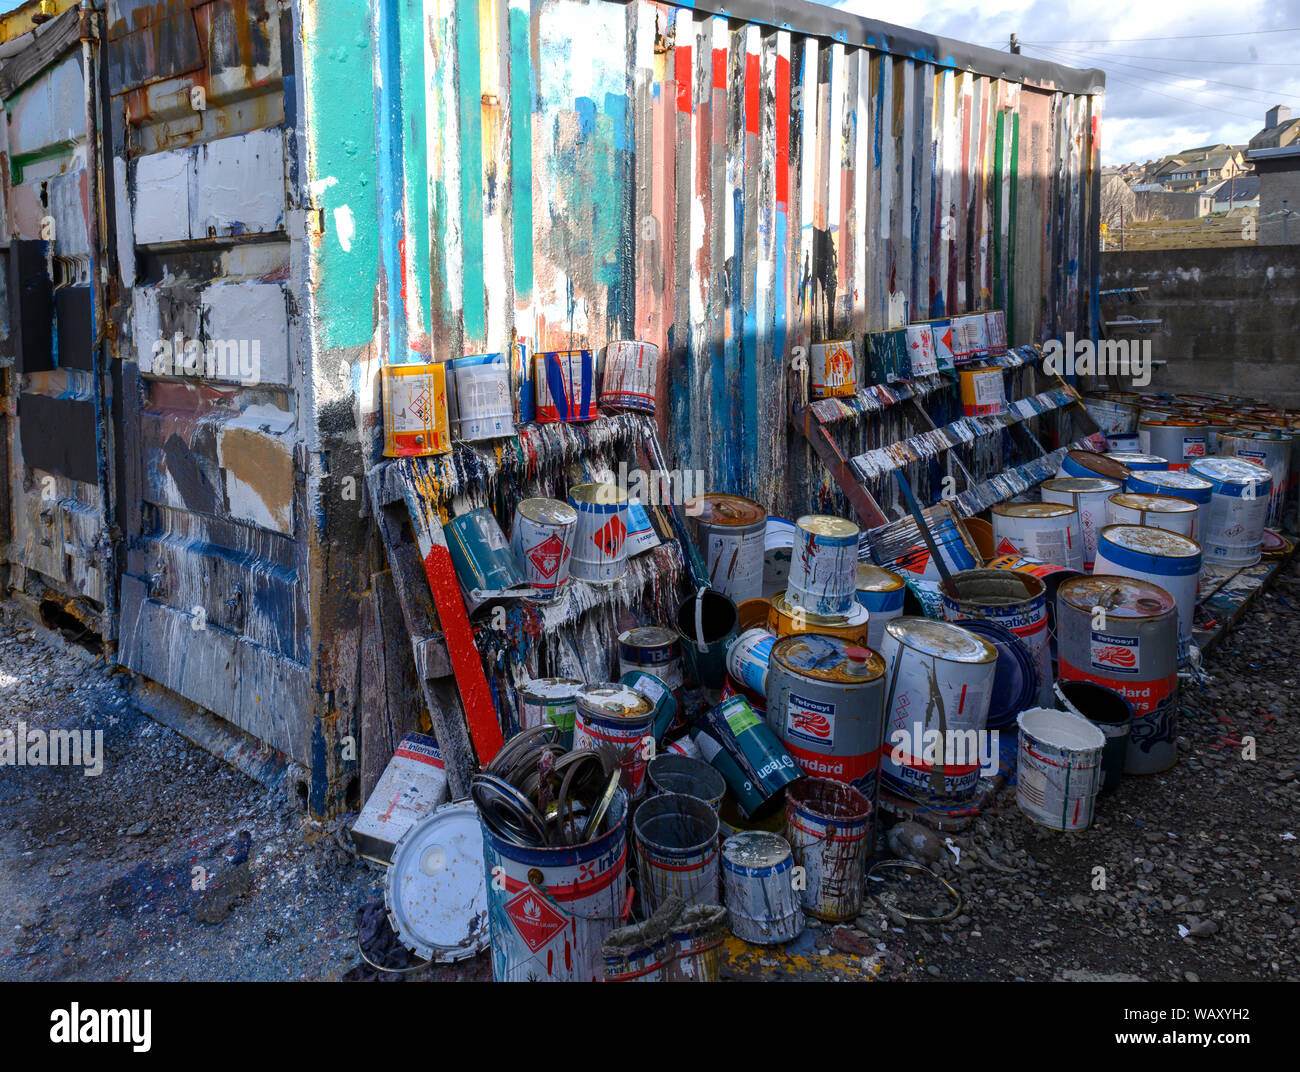 Verworfen Farbdose machen abstrakte Bilder am Hafen, MacDuff, Aberdeenshire, Schottland, Großbritannien Stockfoto